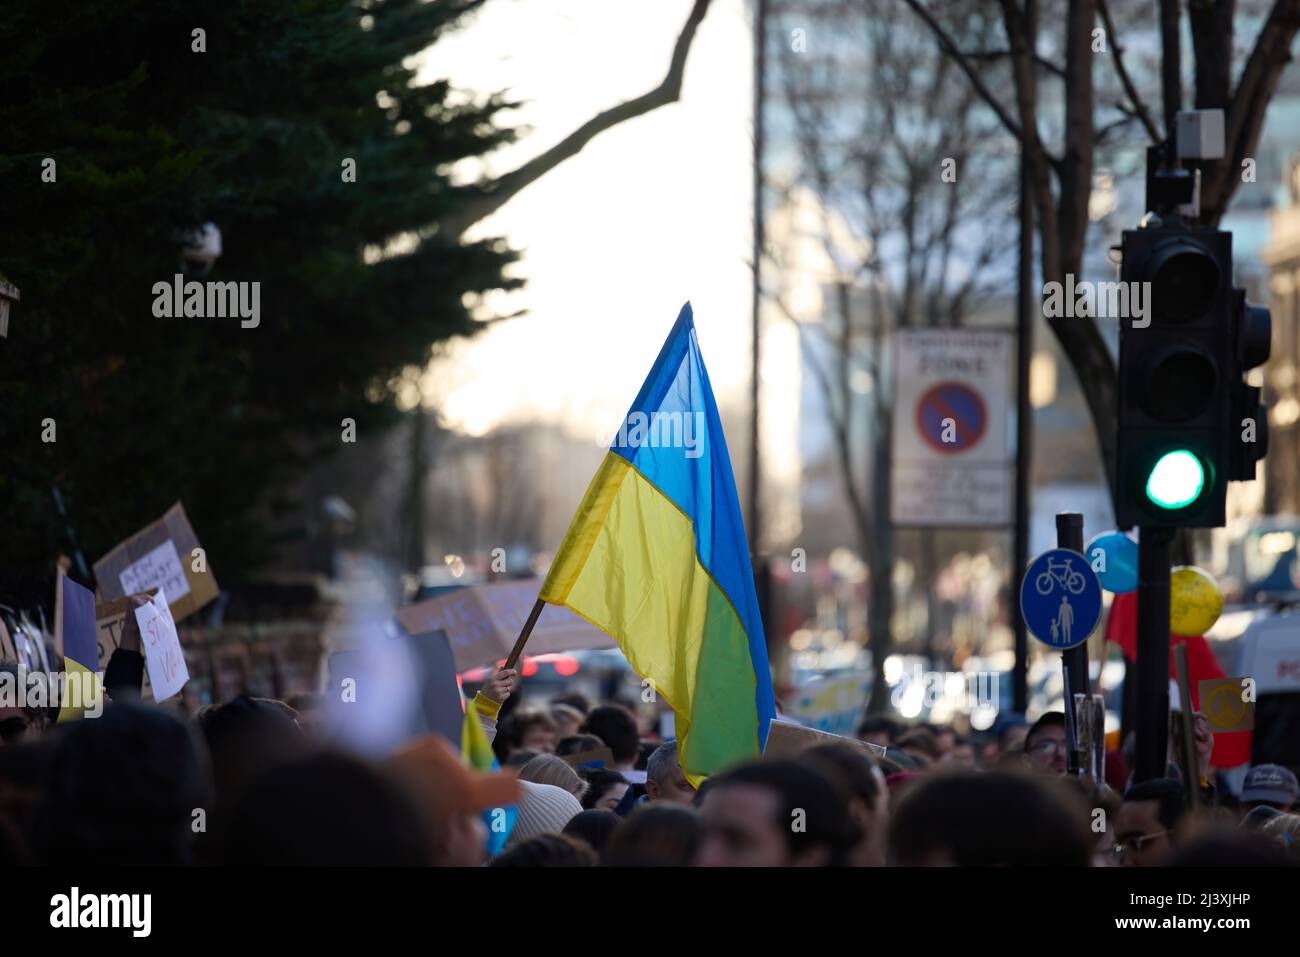 Stand für Protest in der Ukraine, London in der Nähe der russischen Botschaft, Krähe auf der Straße mit ukrainischer Flagge, die für Demokratie und Menschenrechte einsteht Stockfoto